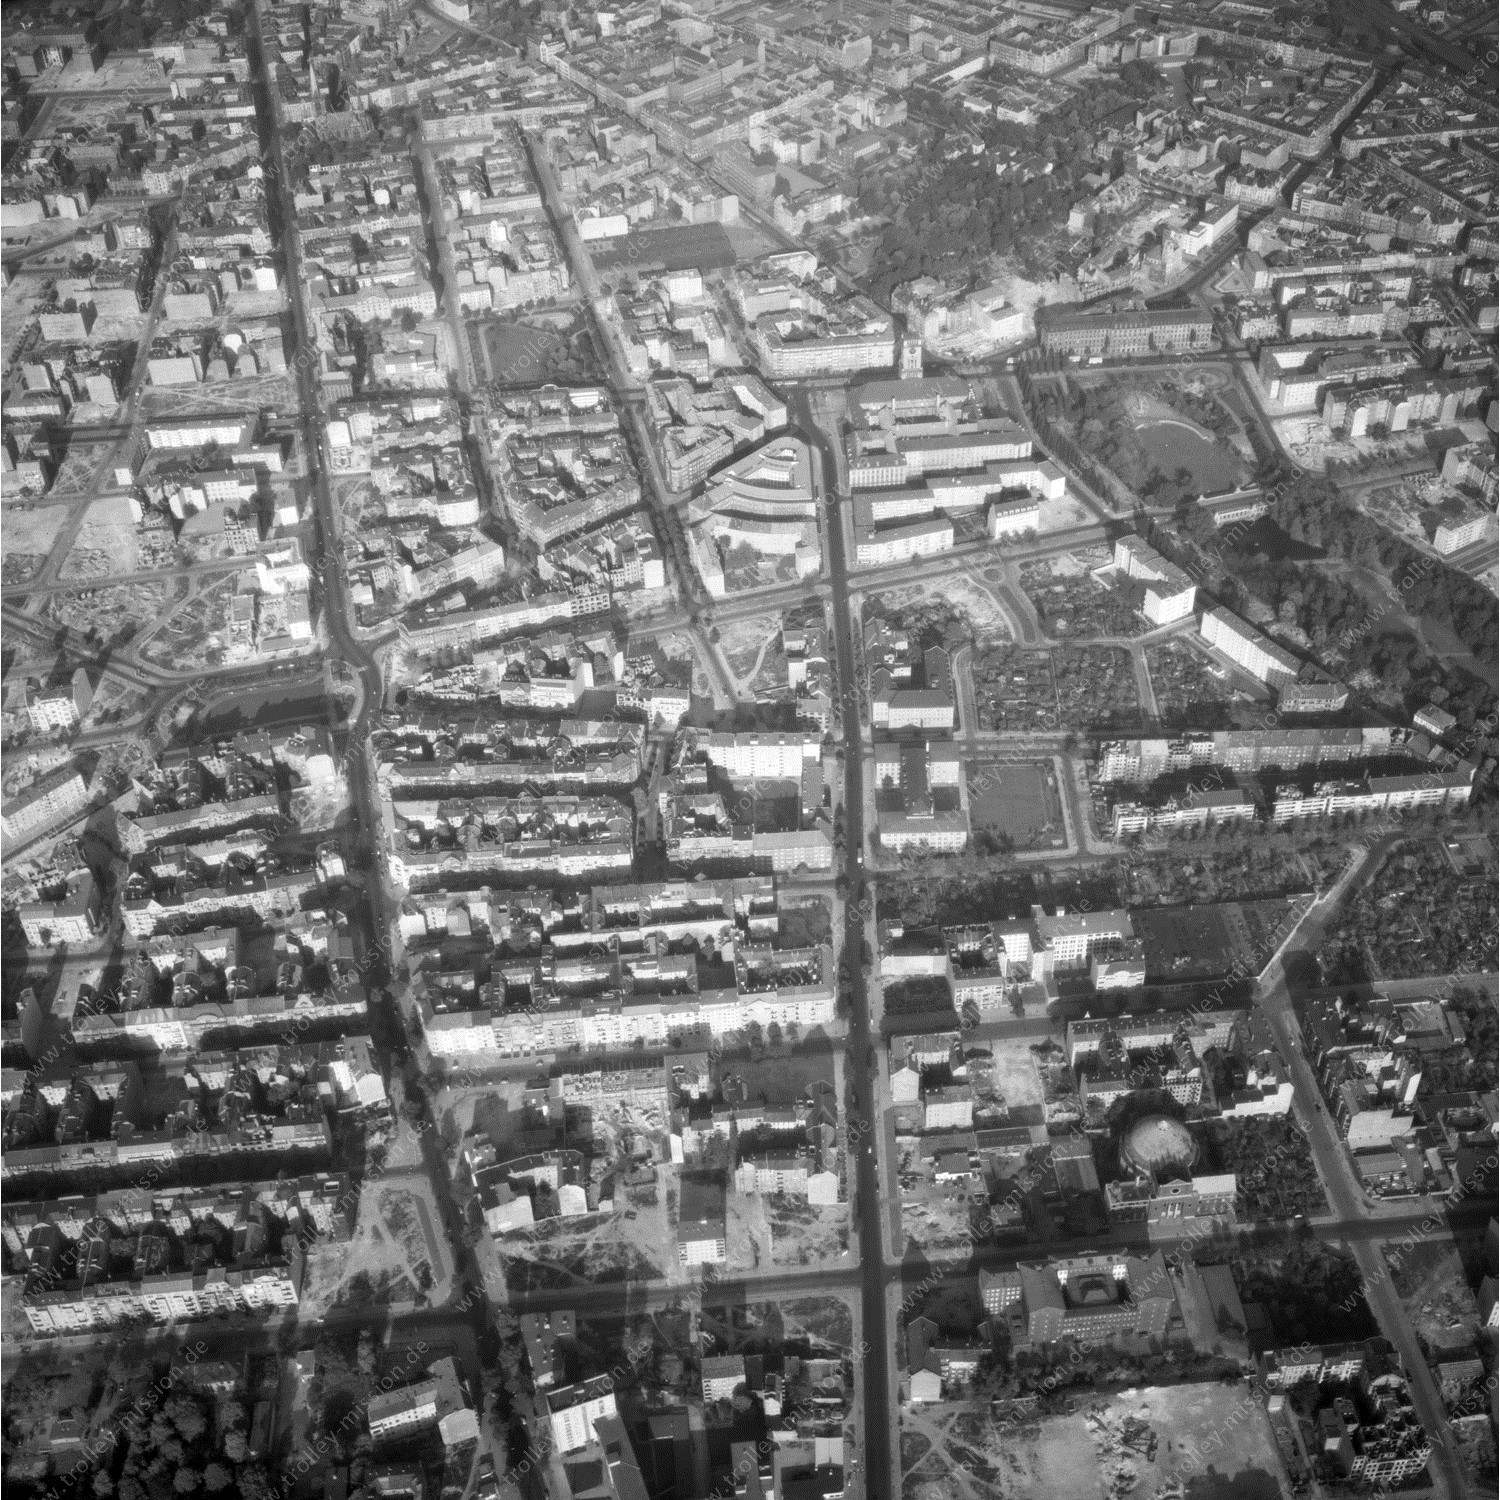 Alte Fotos und Luftbilder von Berlin - Luftbildaufnahme Nr. 03 - Historische Luftaufnahmen von West-Berlin aus dem Jahr 1954 - Flugstrecke Echo